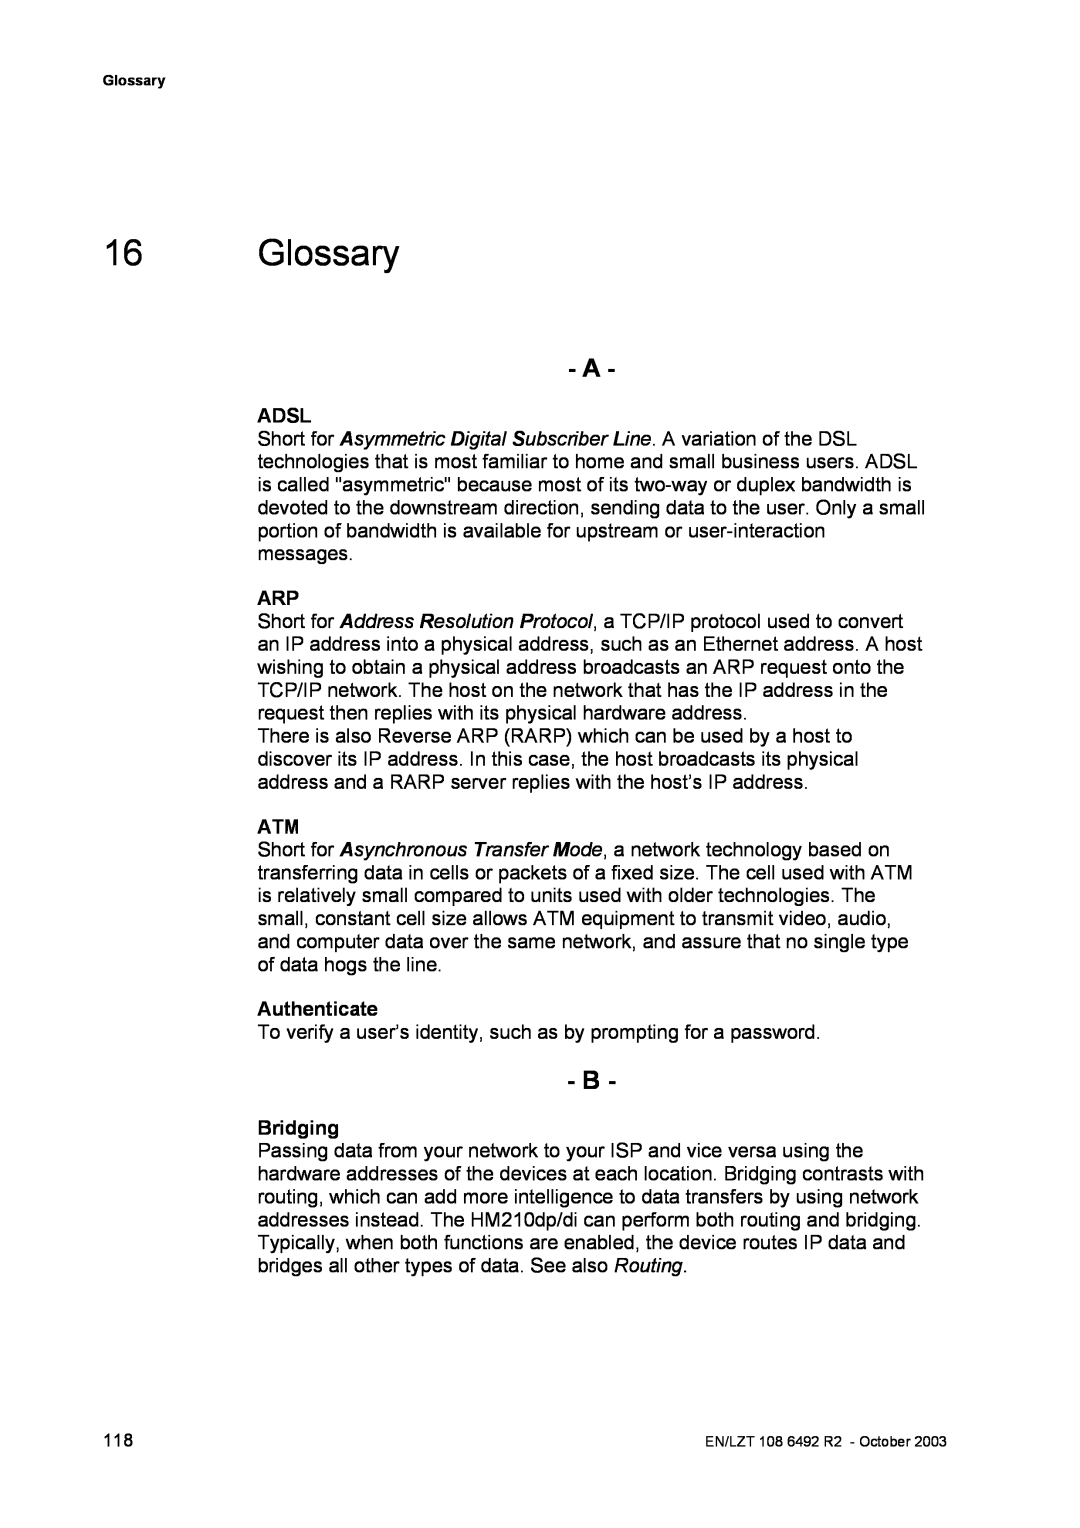 Garmin HM210DP/DI manual Glossary, Adsl, Authenticate, Bridging 